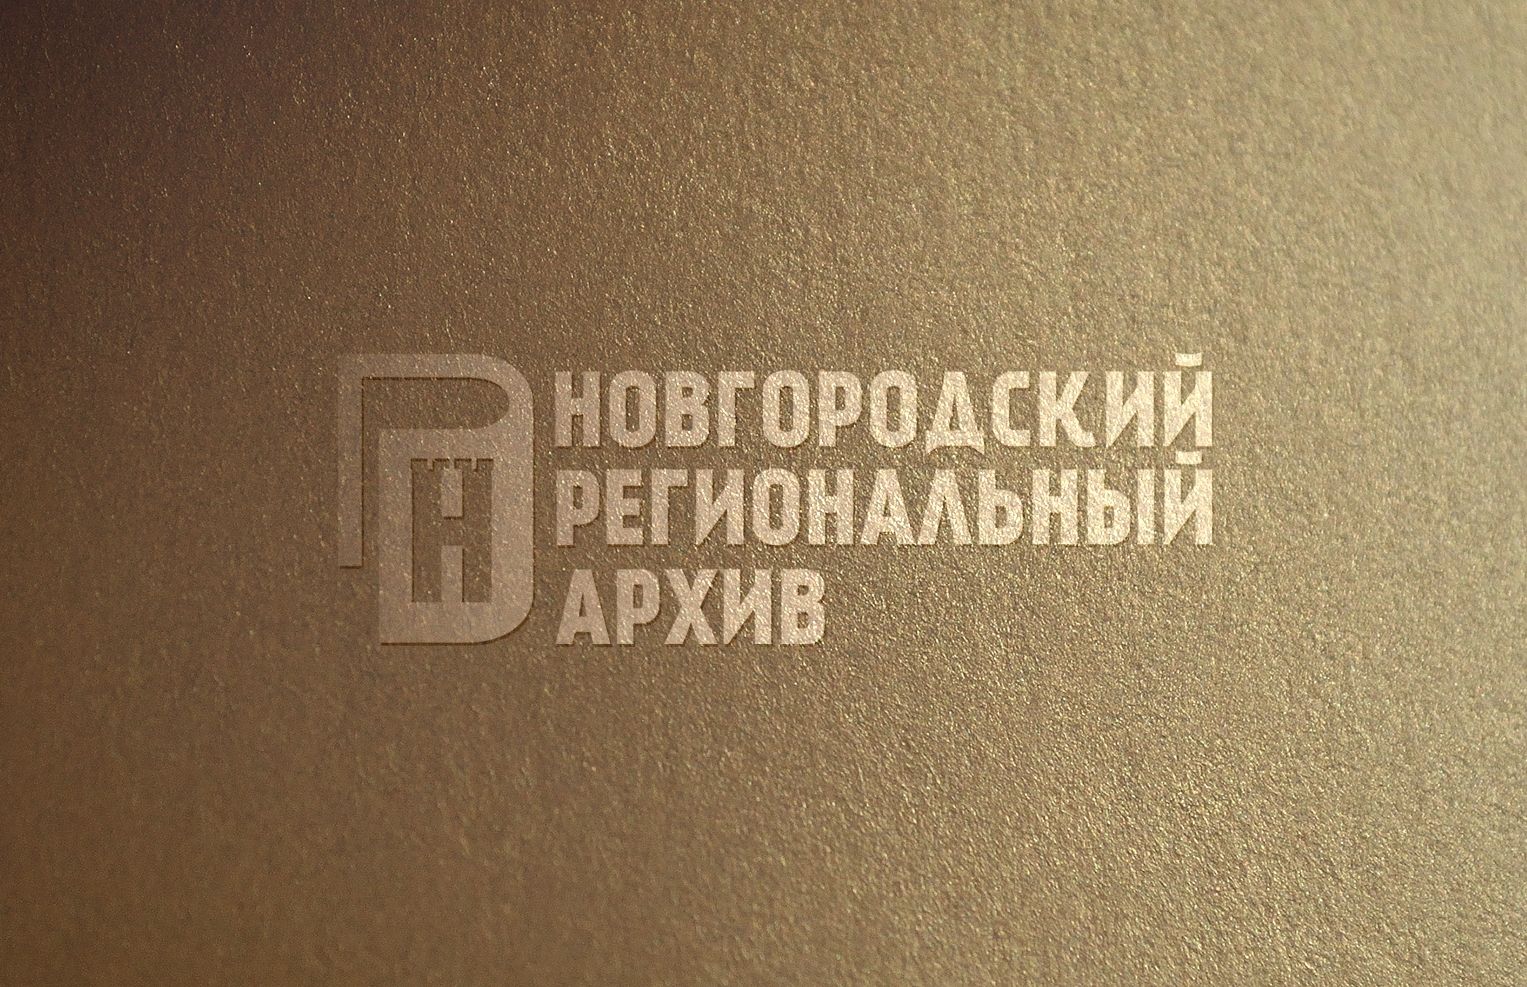 Логотип и фирменный стиль архива - дизайнер IGOR-GOR